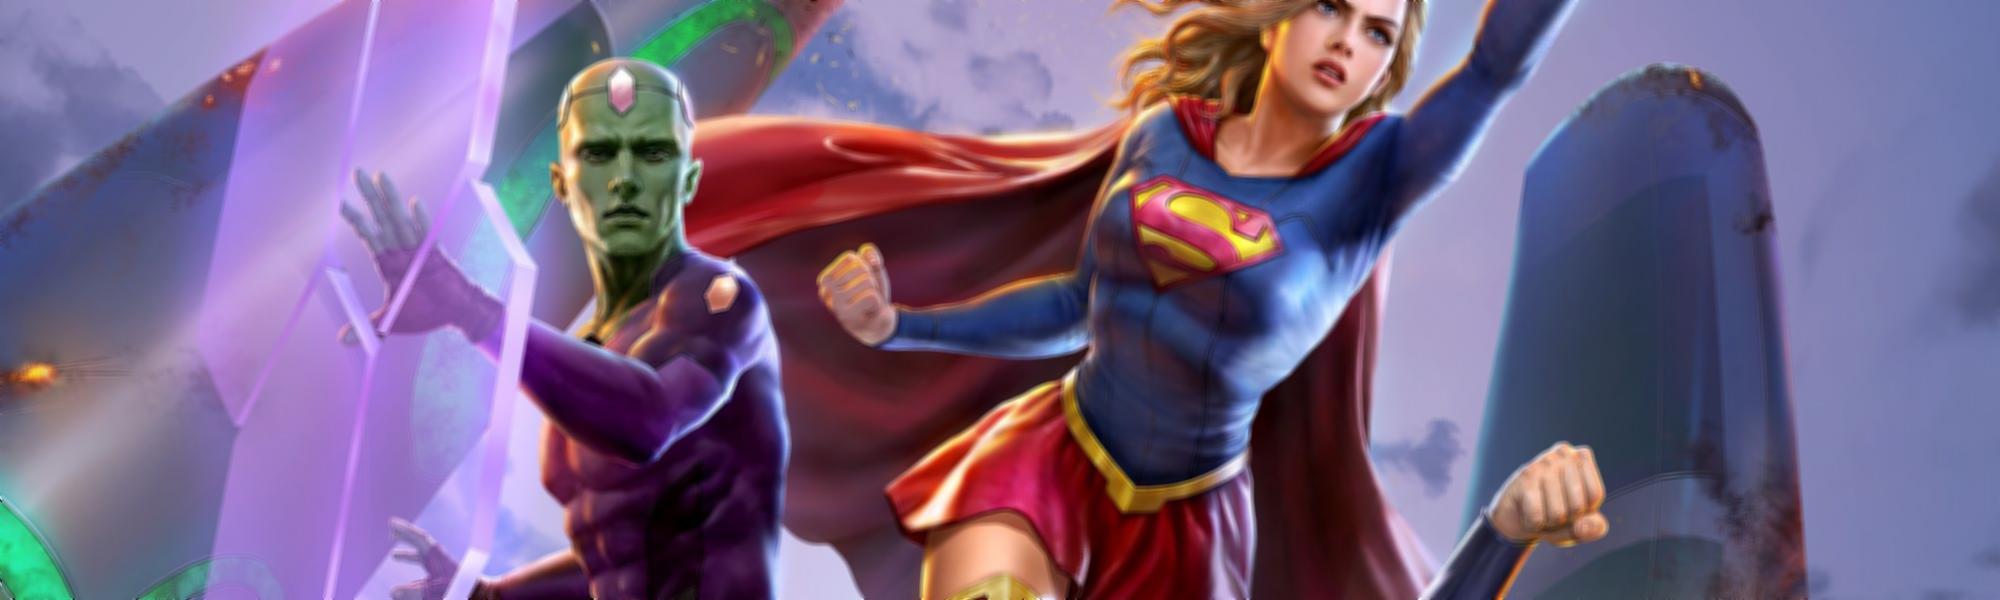 Legião dos Super-Heróis - 28 de Fevereiro de 2023